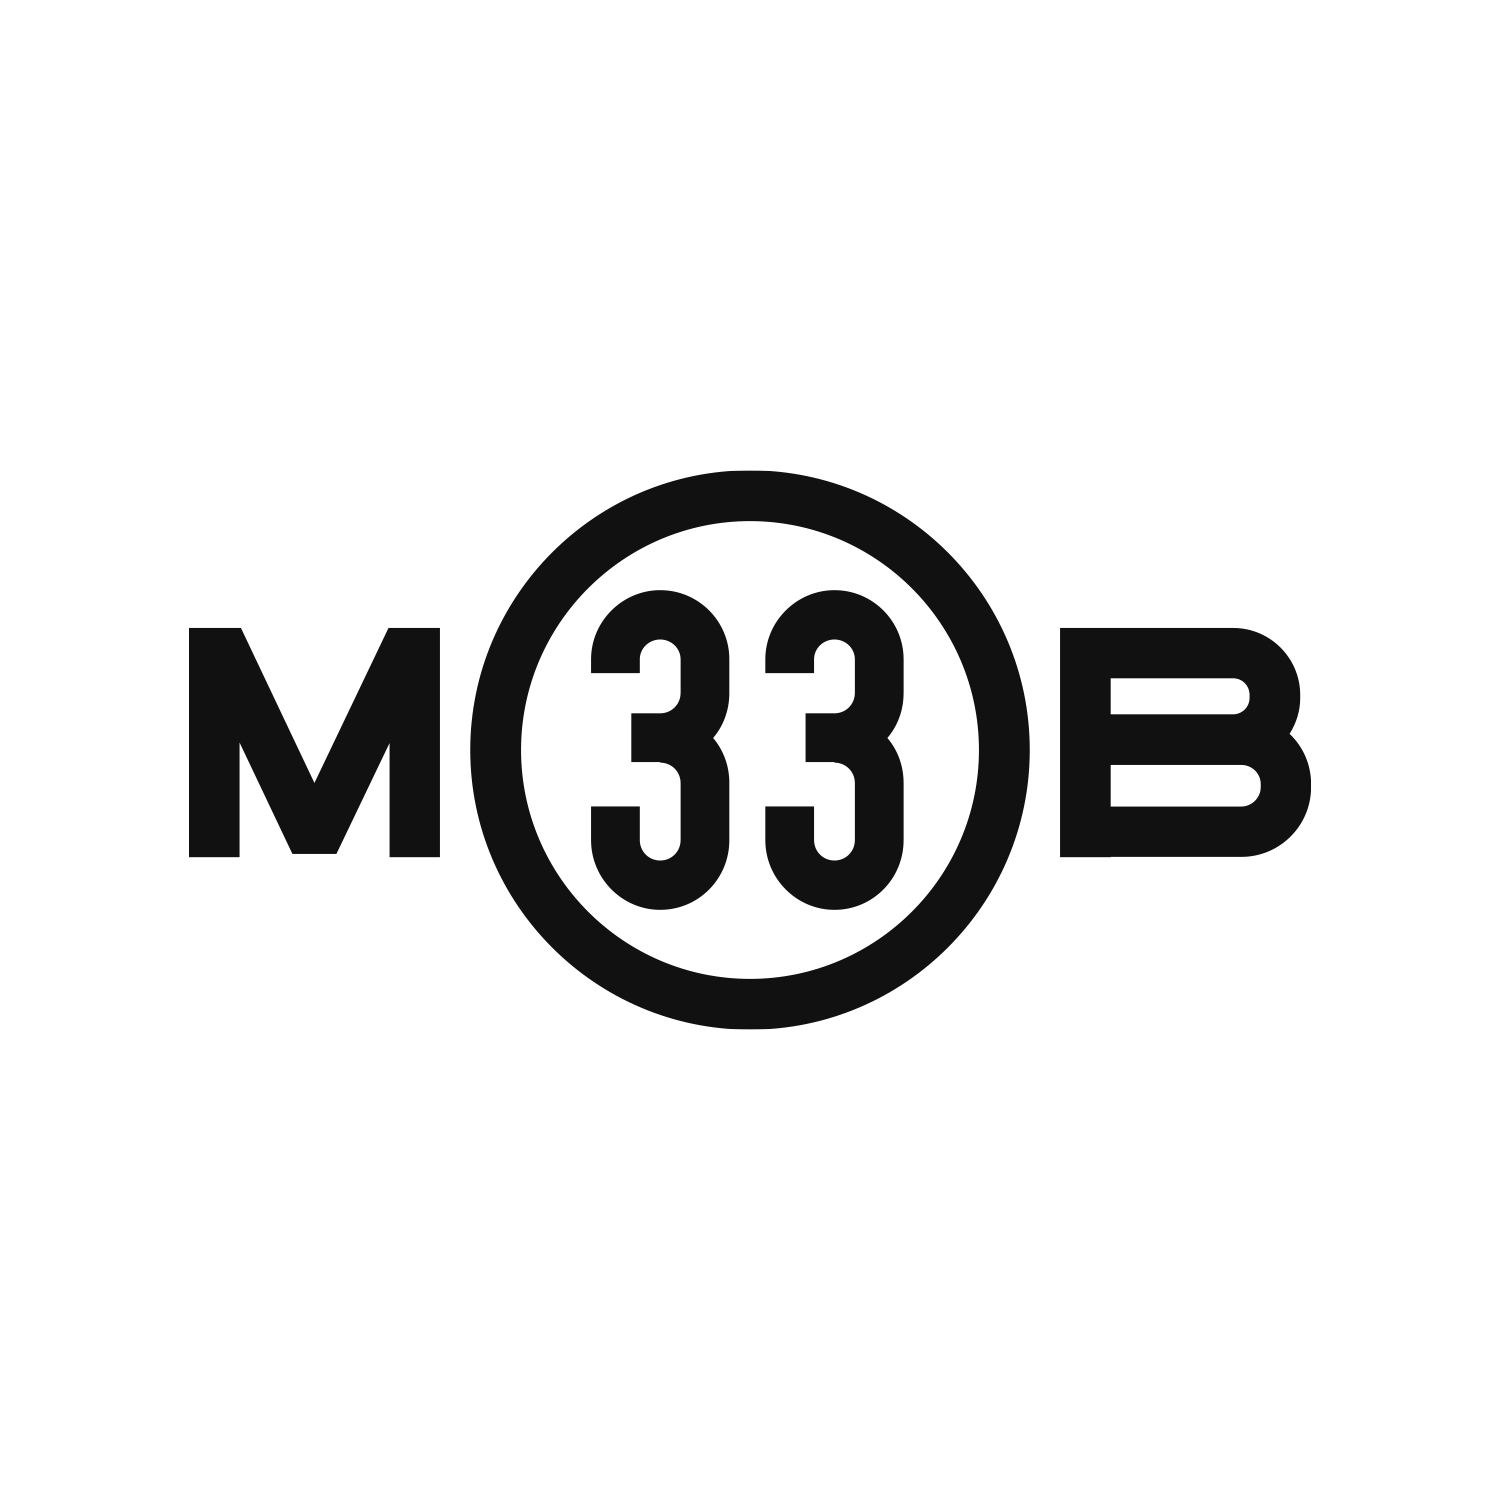 33mob-mono